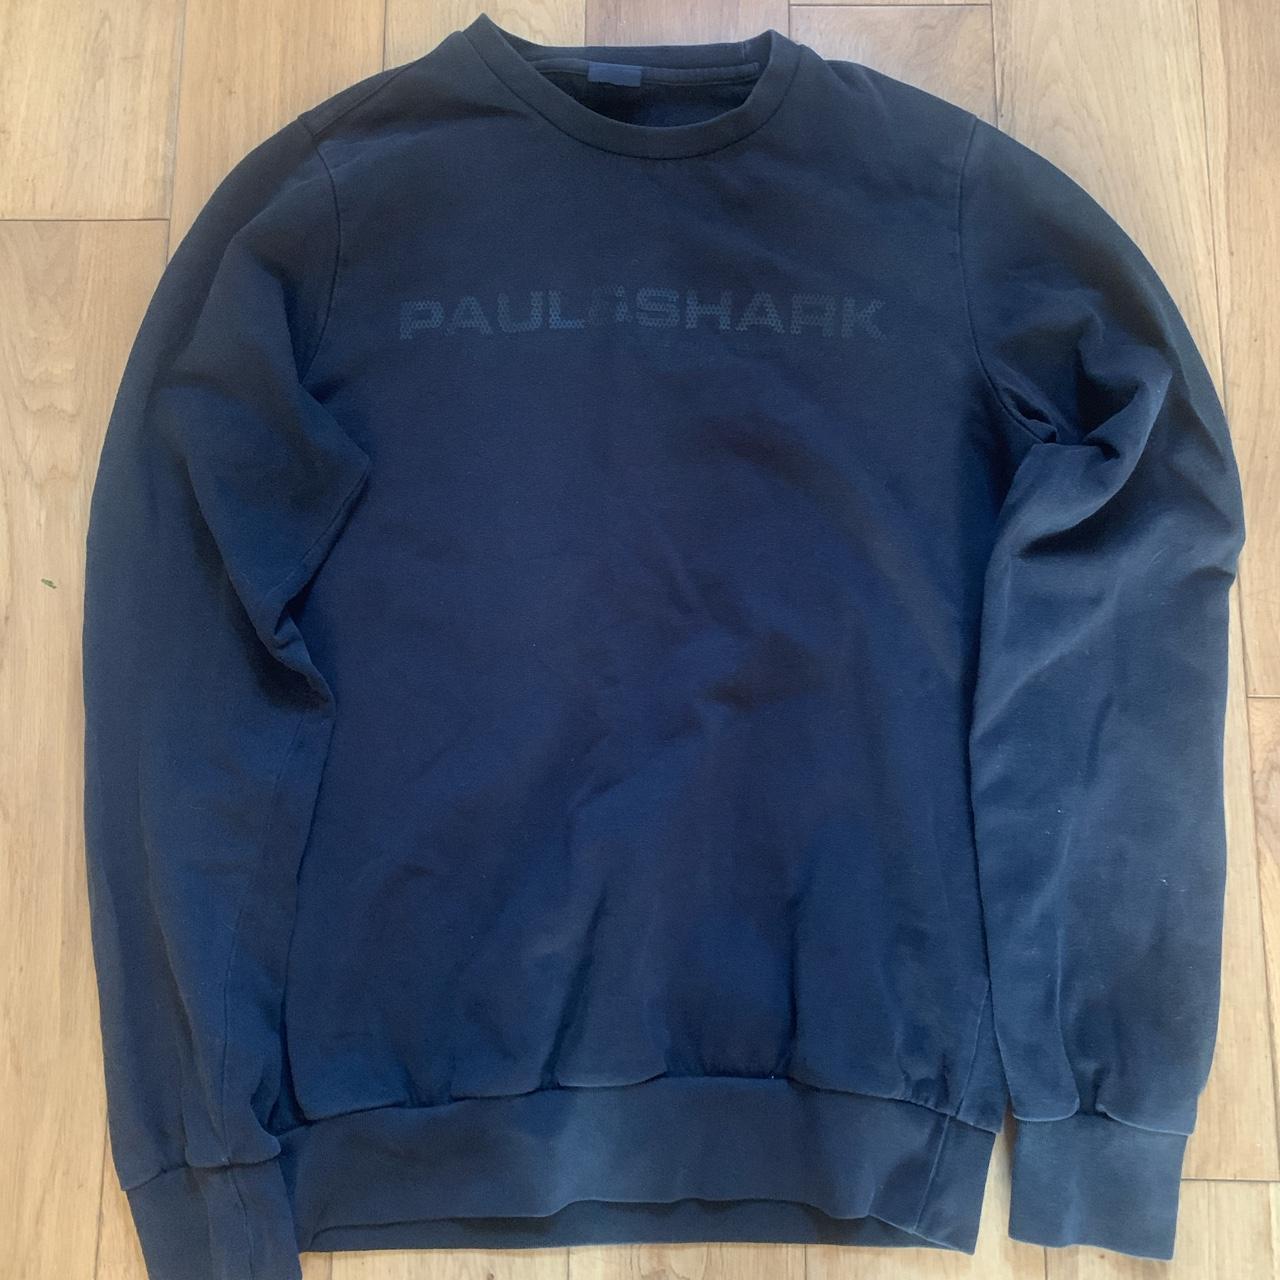 Paul shark sweatshirt, Black Size small true to size - Depop